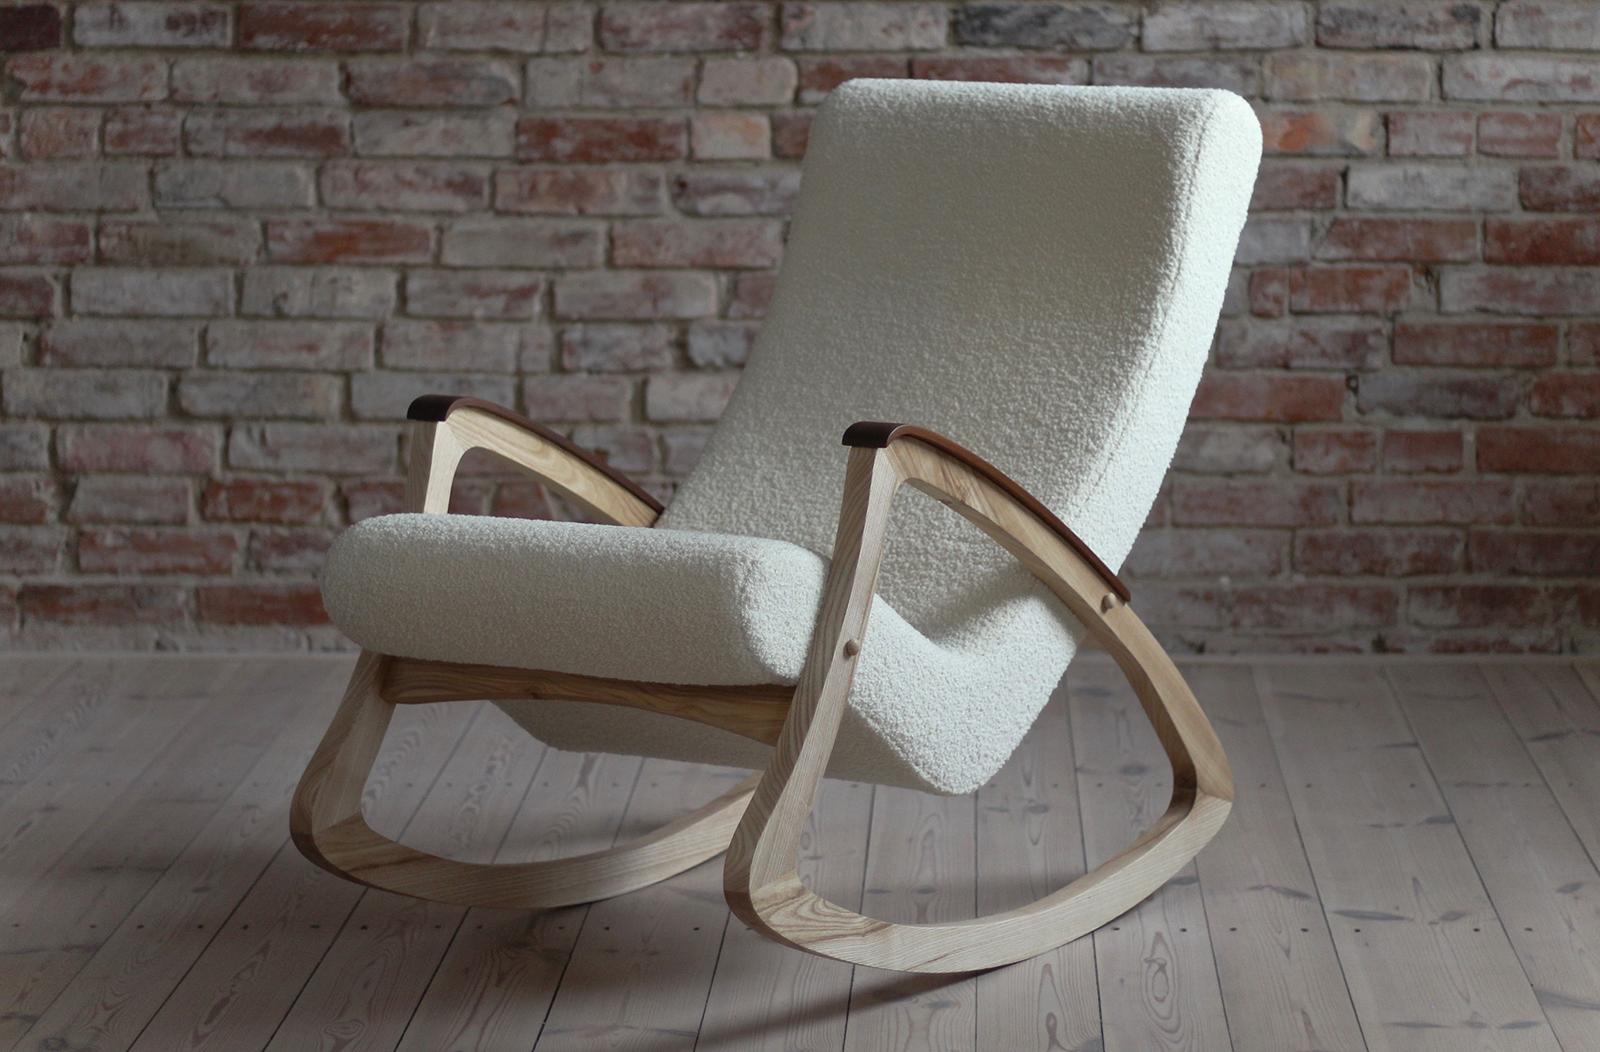 Modèle très rare de chaise à bascule provenant très probablement de Tchécoslovaquie, vers les années 1950. Il présente un cadre en bois de belle forme qui a été nettoyé et refini avec de l'huile de bois naturelle. Les sièges ont été retapissés dans